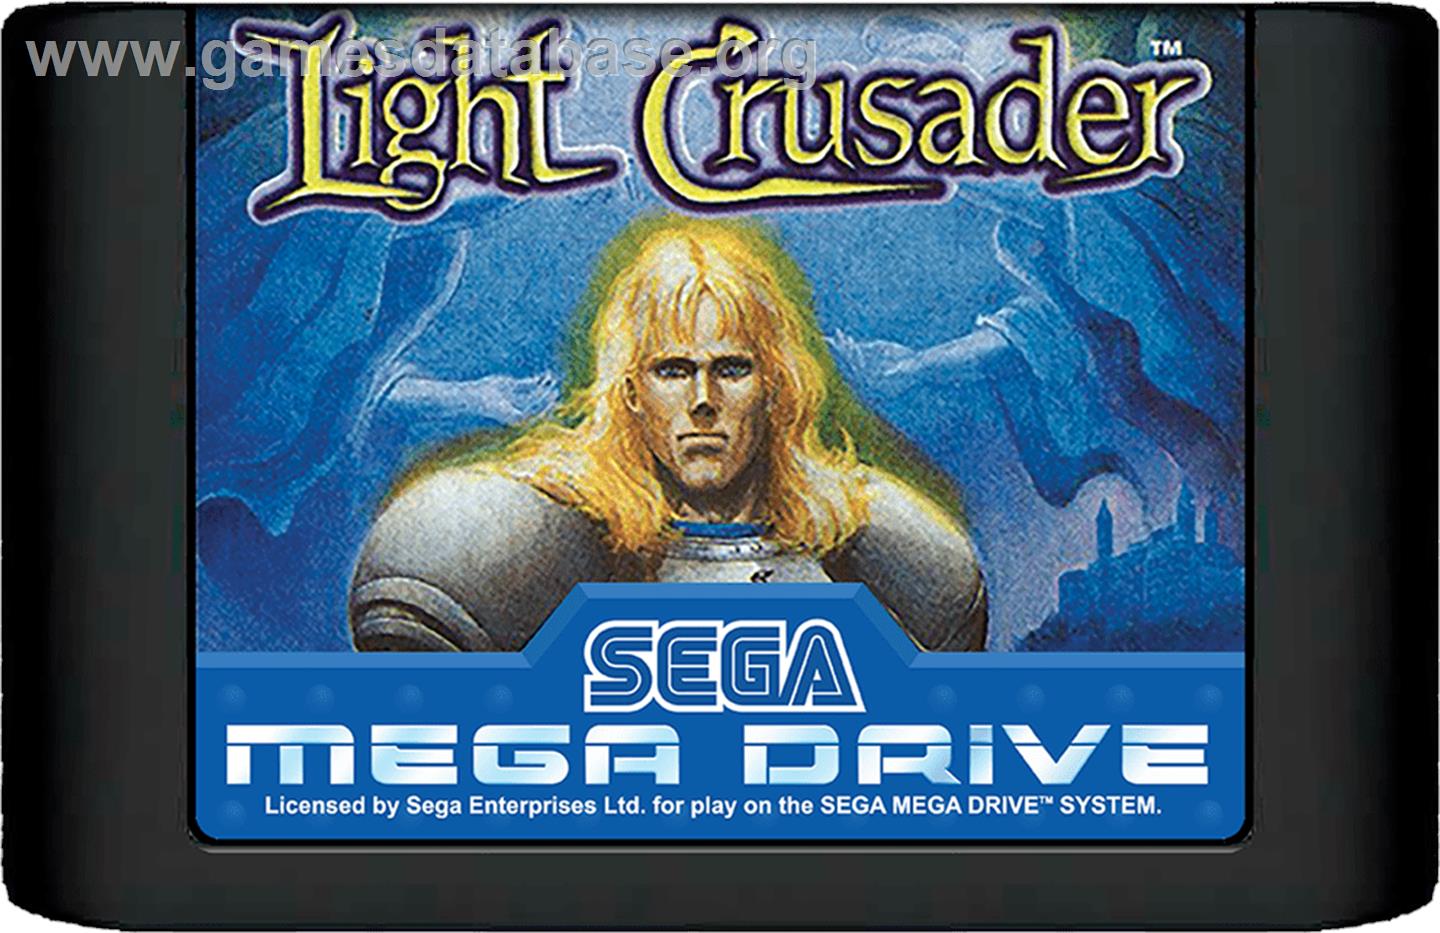 Light Crusader - Sega Genesis - Artwork - Cartridge